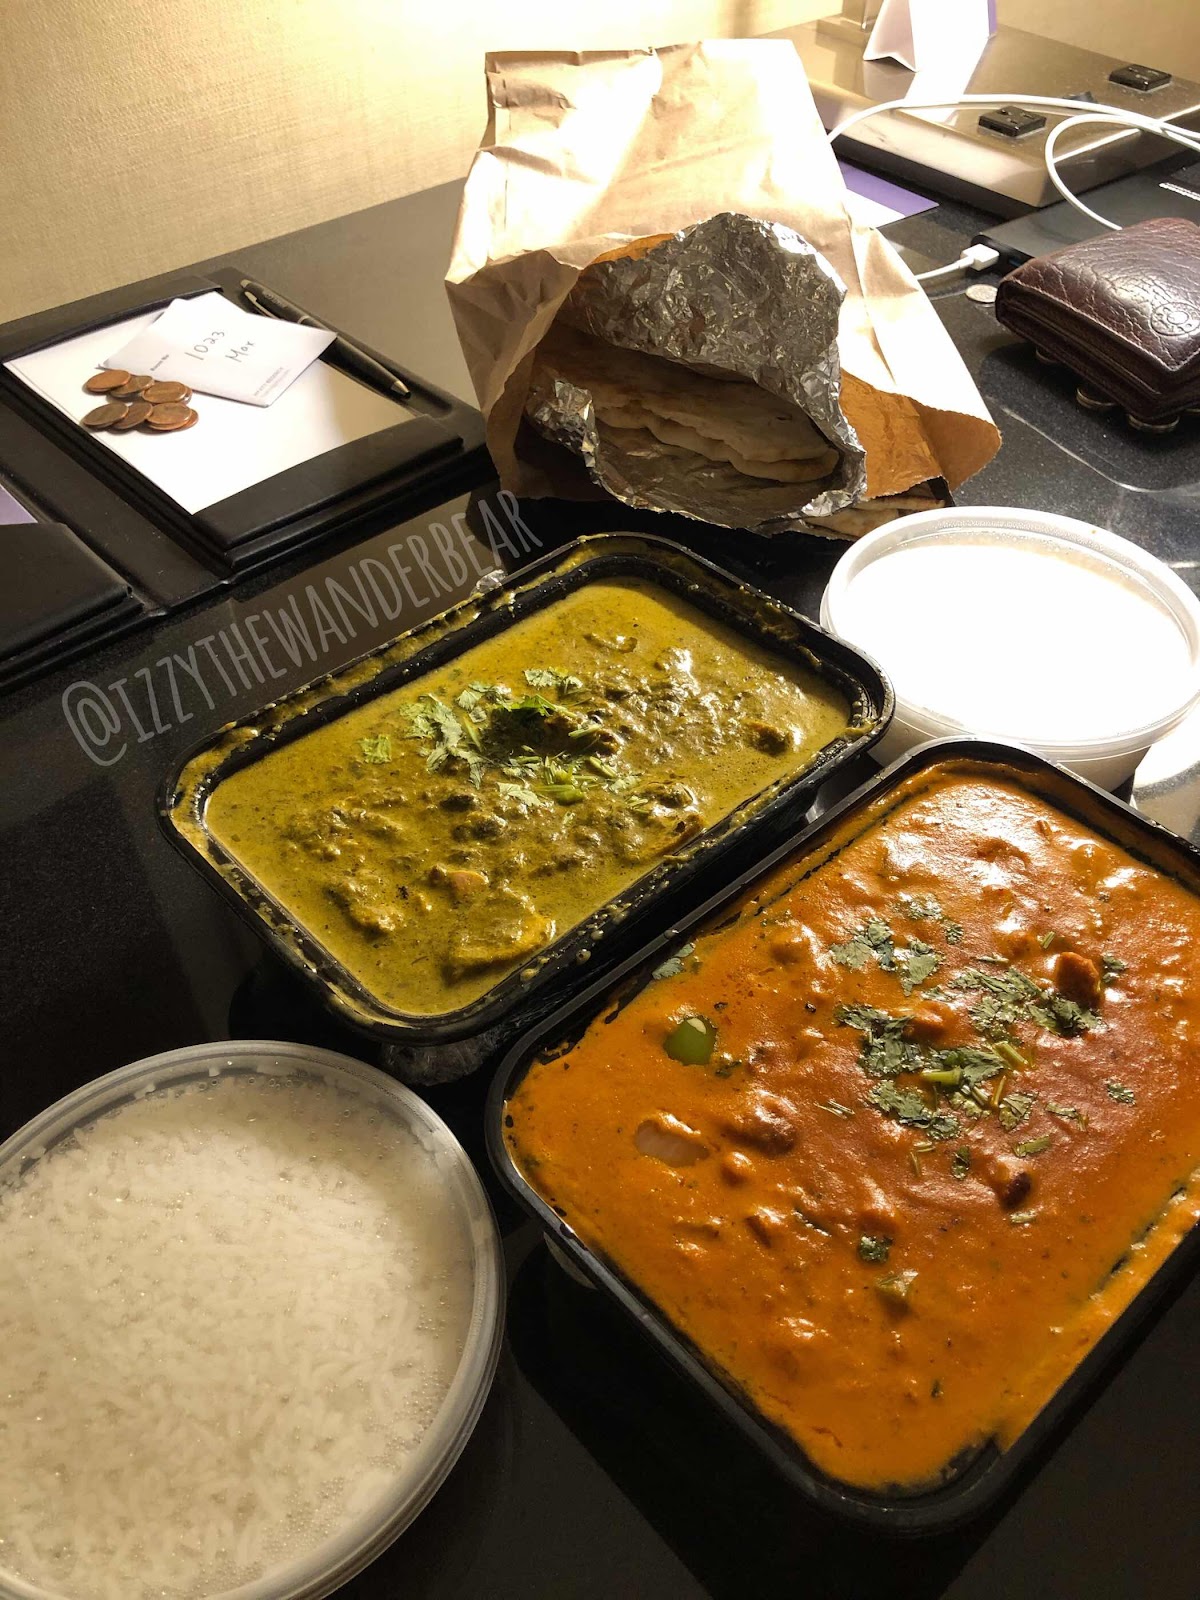 ITWB - uberEats: Indian Food